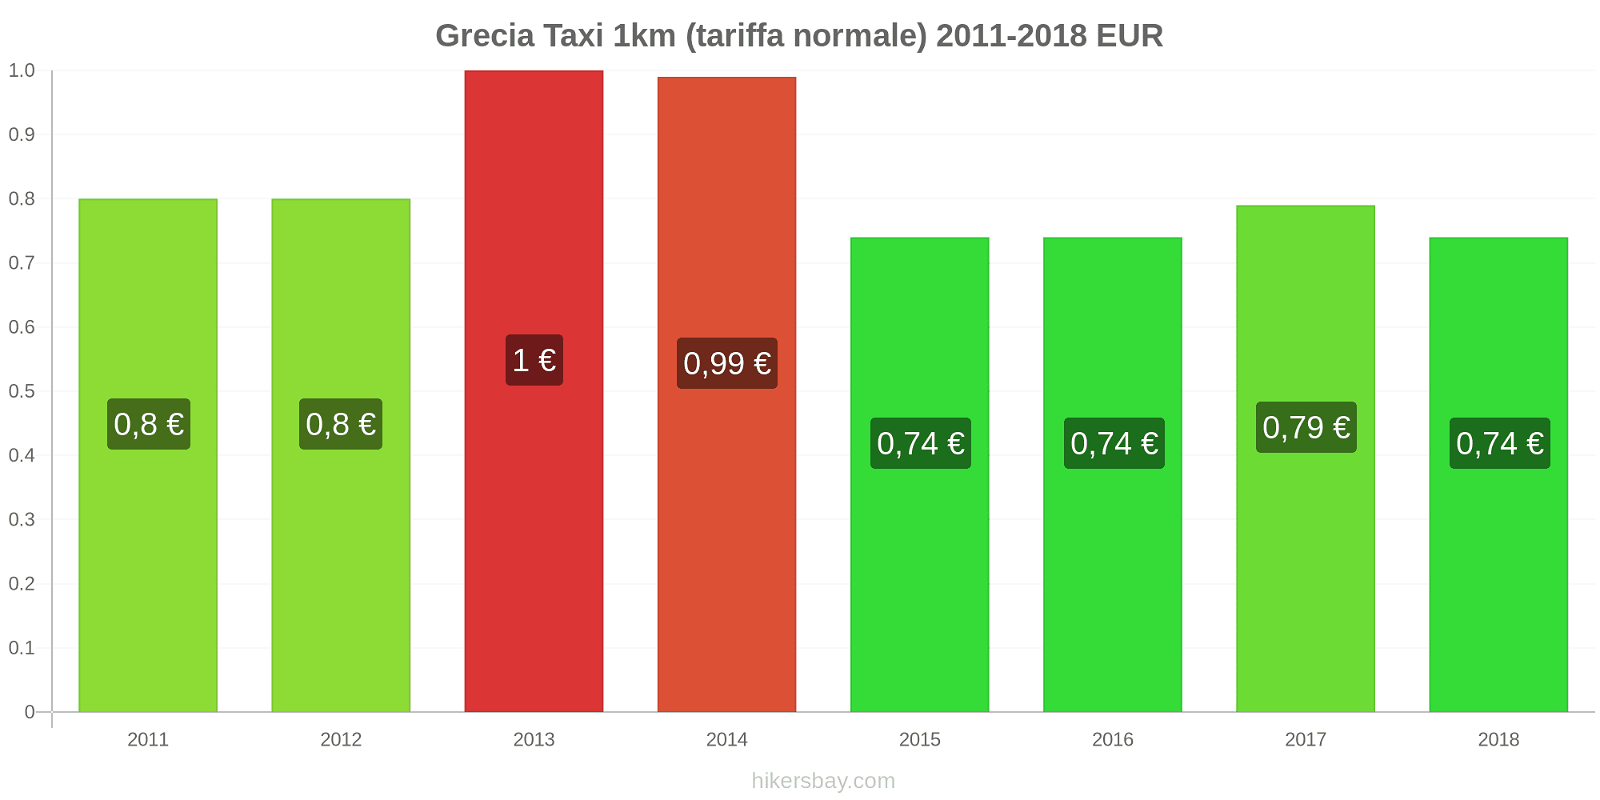 Grecia cambi di prezzo Taxi 1km (tariffa normale) hikersbay.com